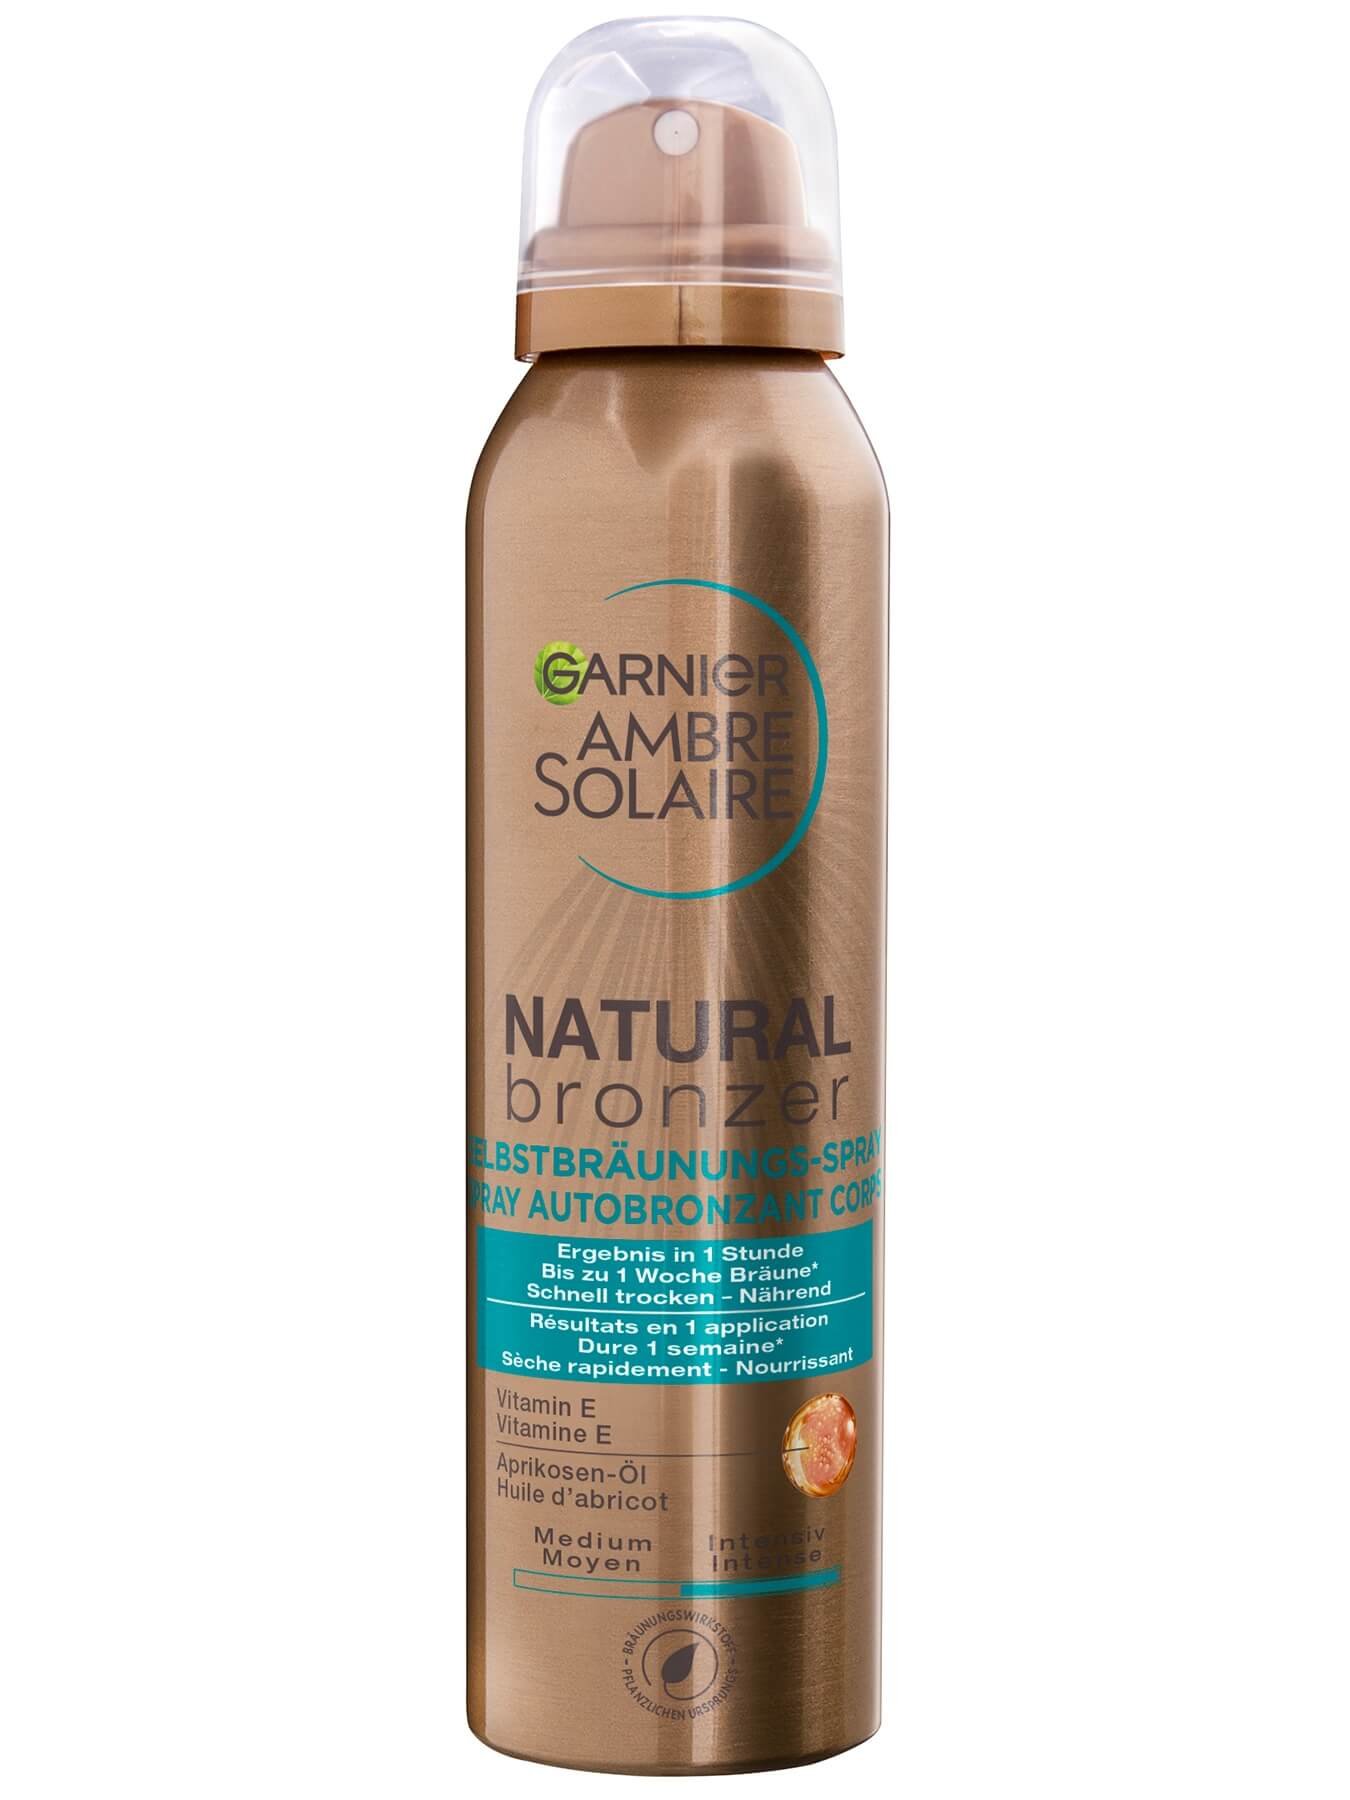 Garnier Natural Bronzer Selbstbräunungs-Spray Produktabbildung Vorderansicht